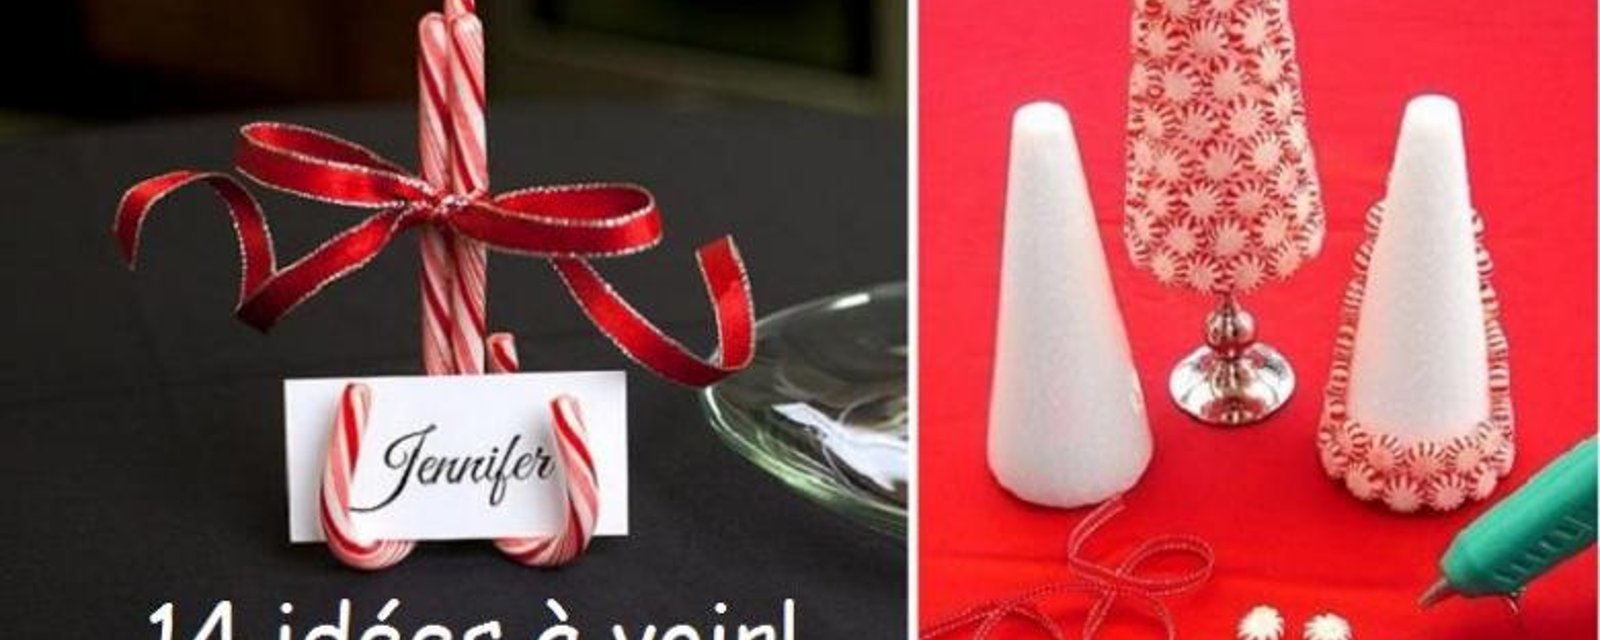 14 idées faciles pour décorer votre table de Noël avec des bonbons! 